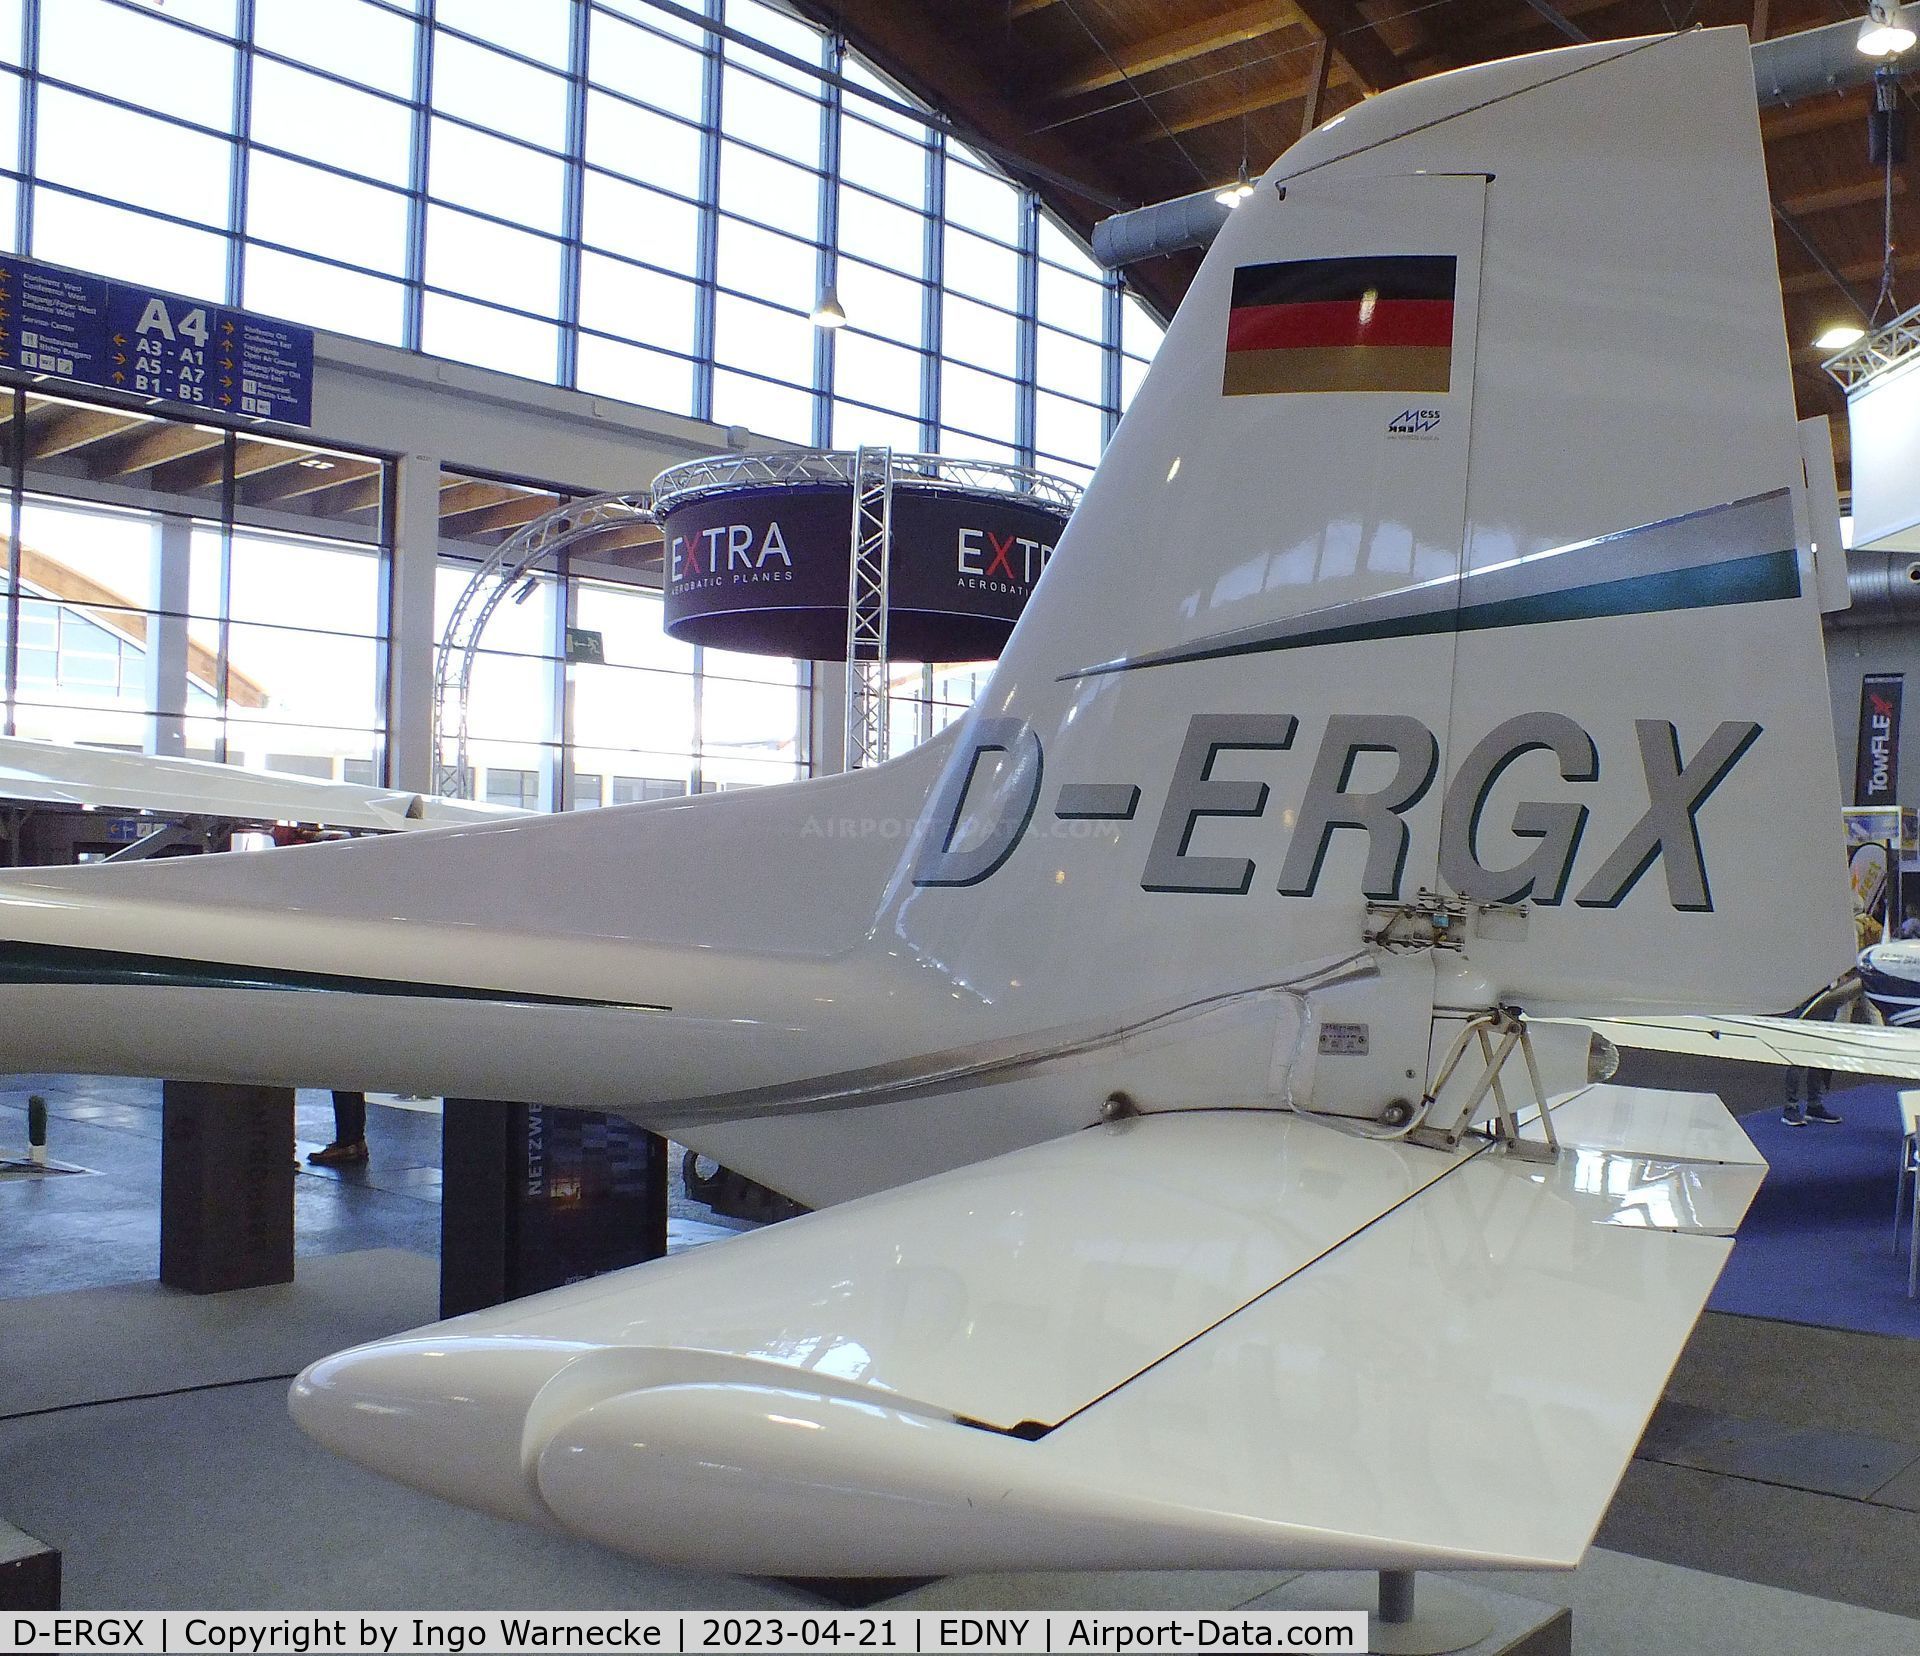 D-ERGX, 2012 Remos GX C/N 418, Remos GX with underwing sensor-pod at the AERO 2023, Friedrichshafen